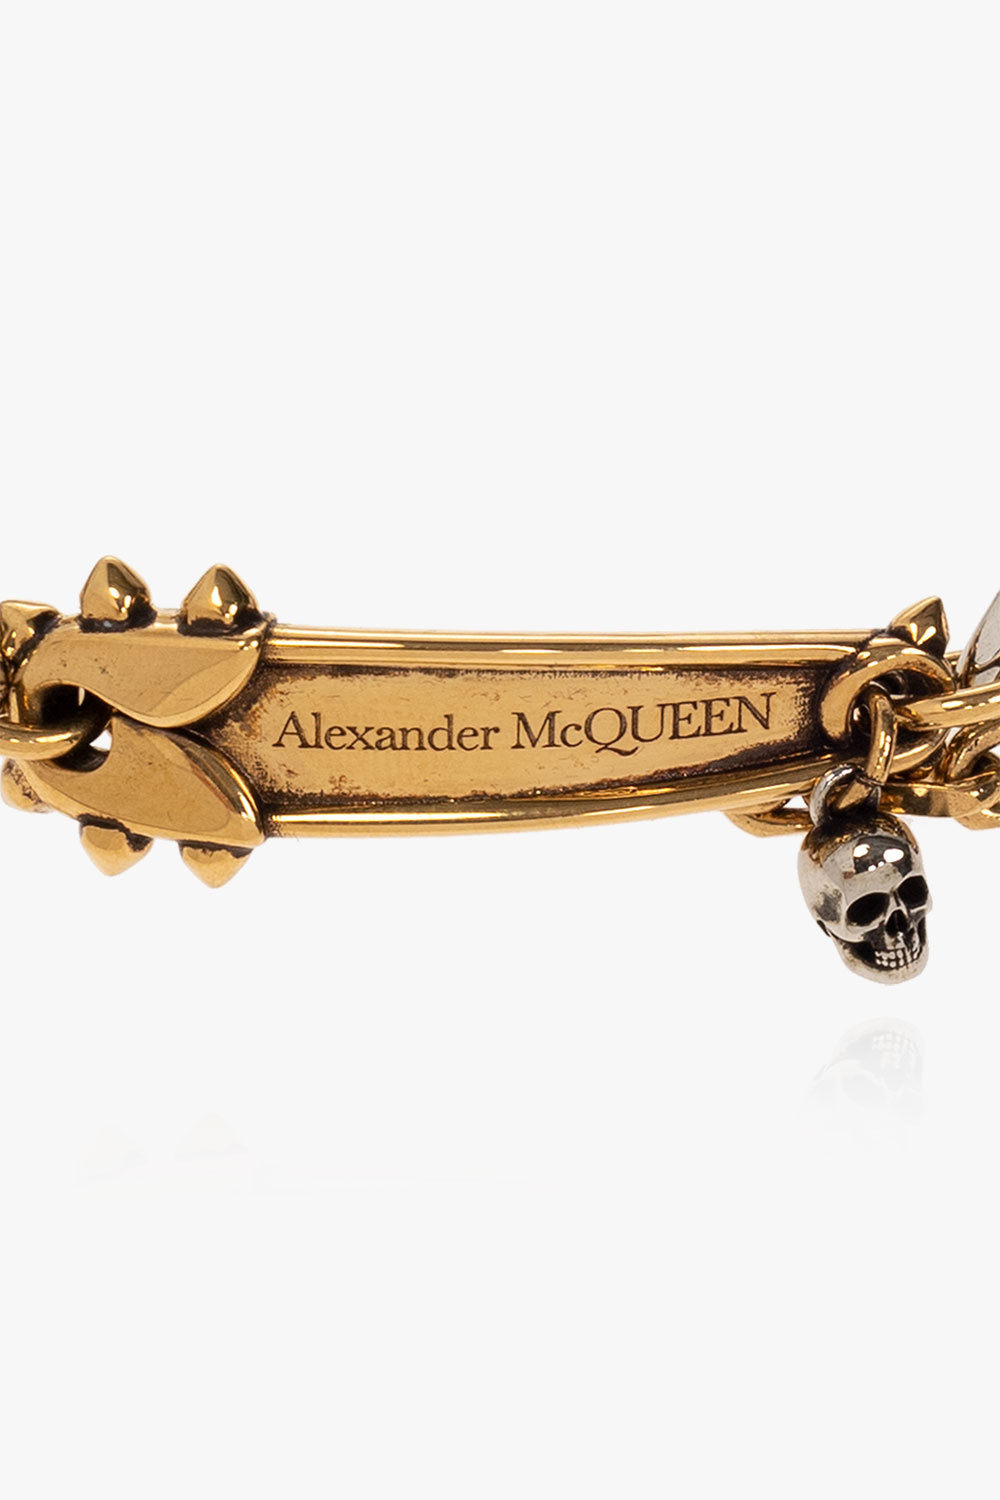 Alexander McQueen Brass shoes